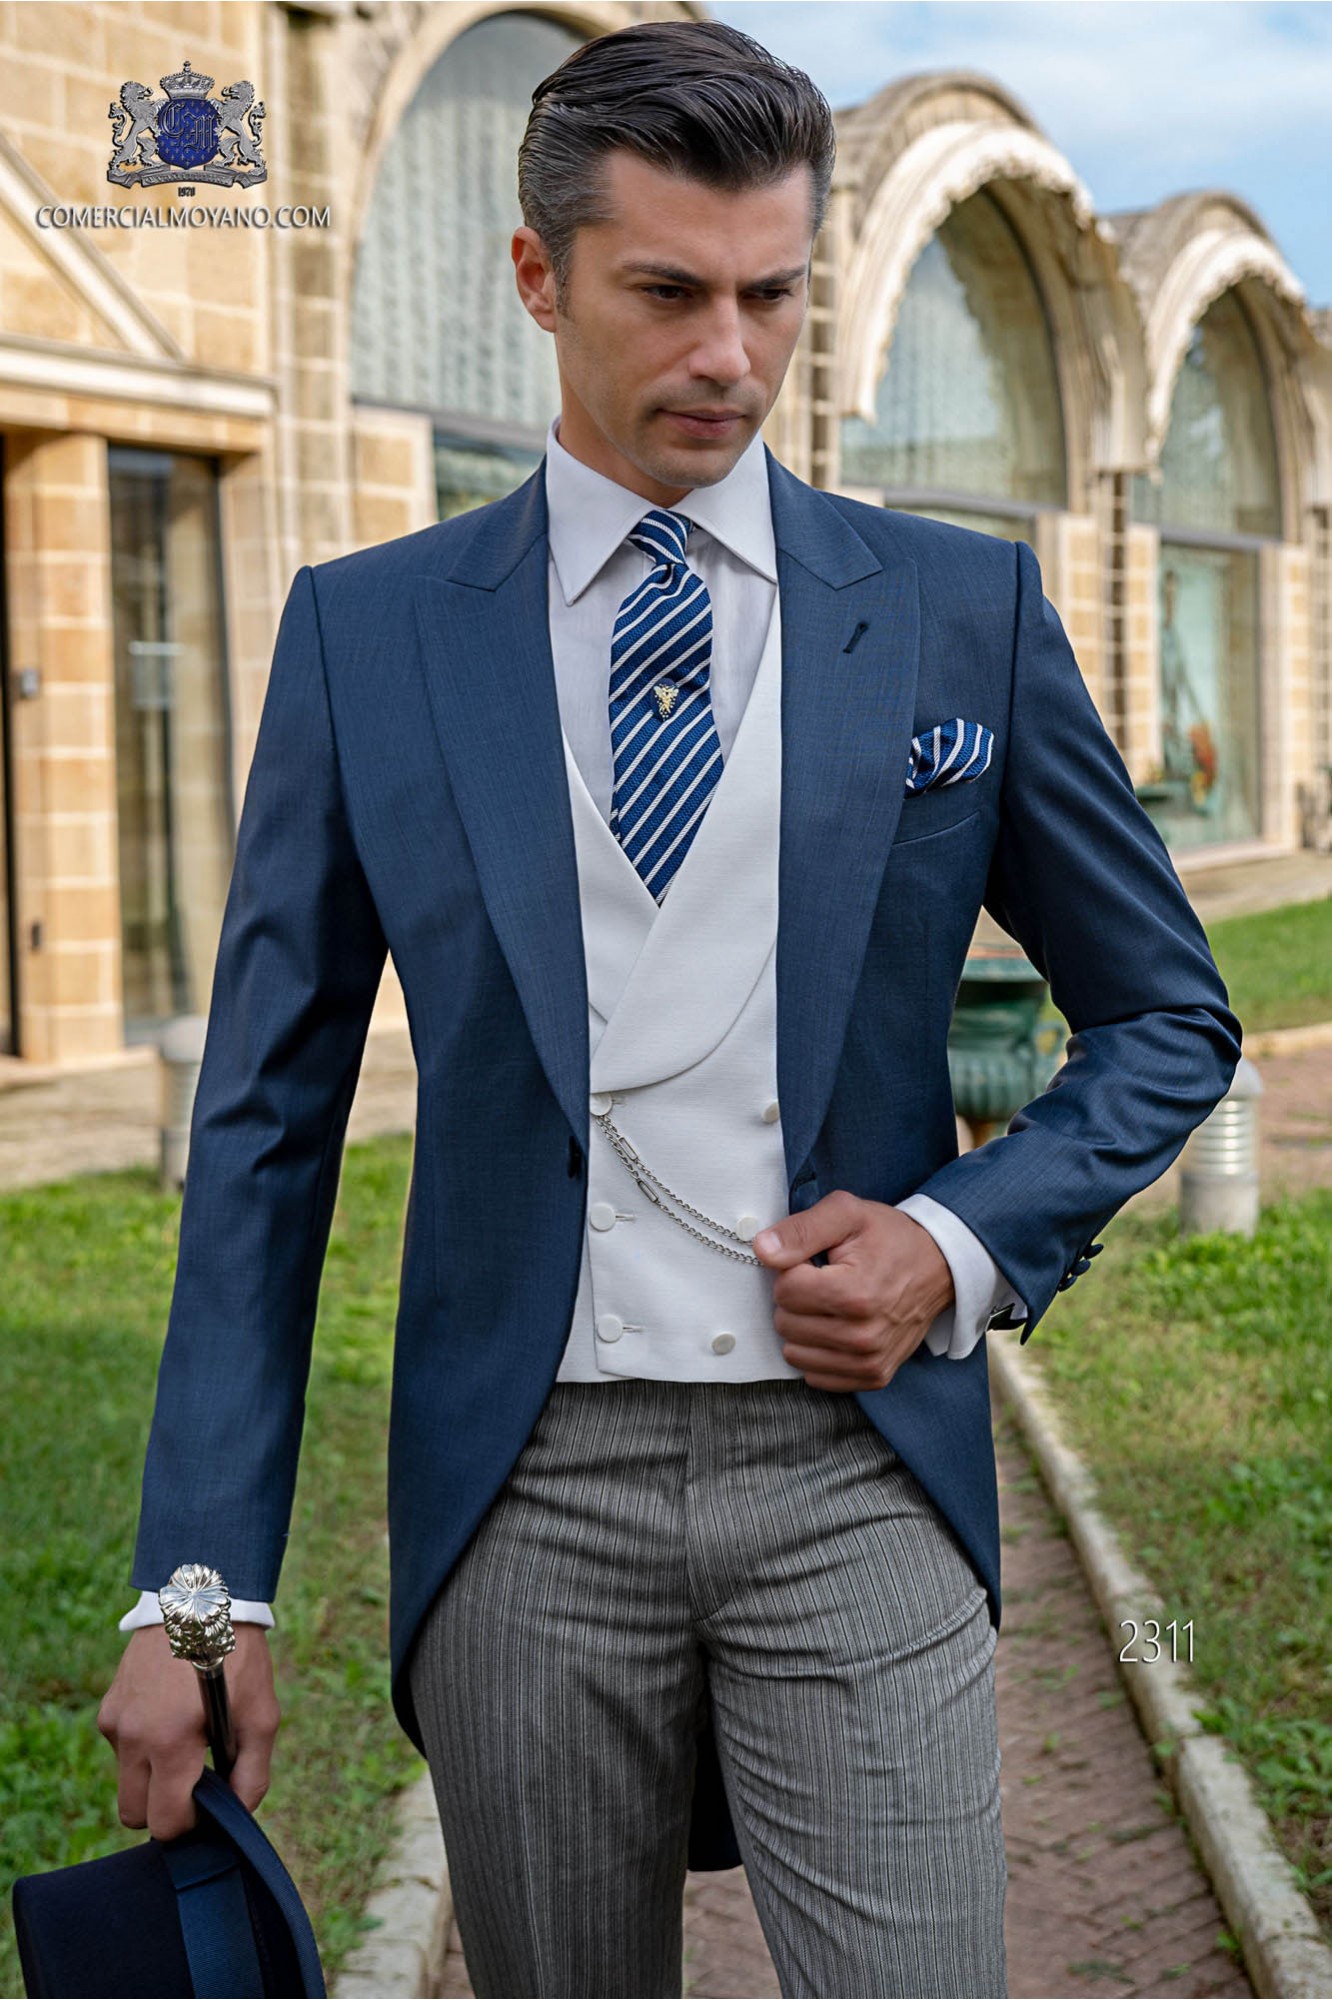 Chaqué azul fil a fil modelo: 2311 Mario Moyano colección Gentleman